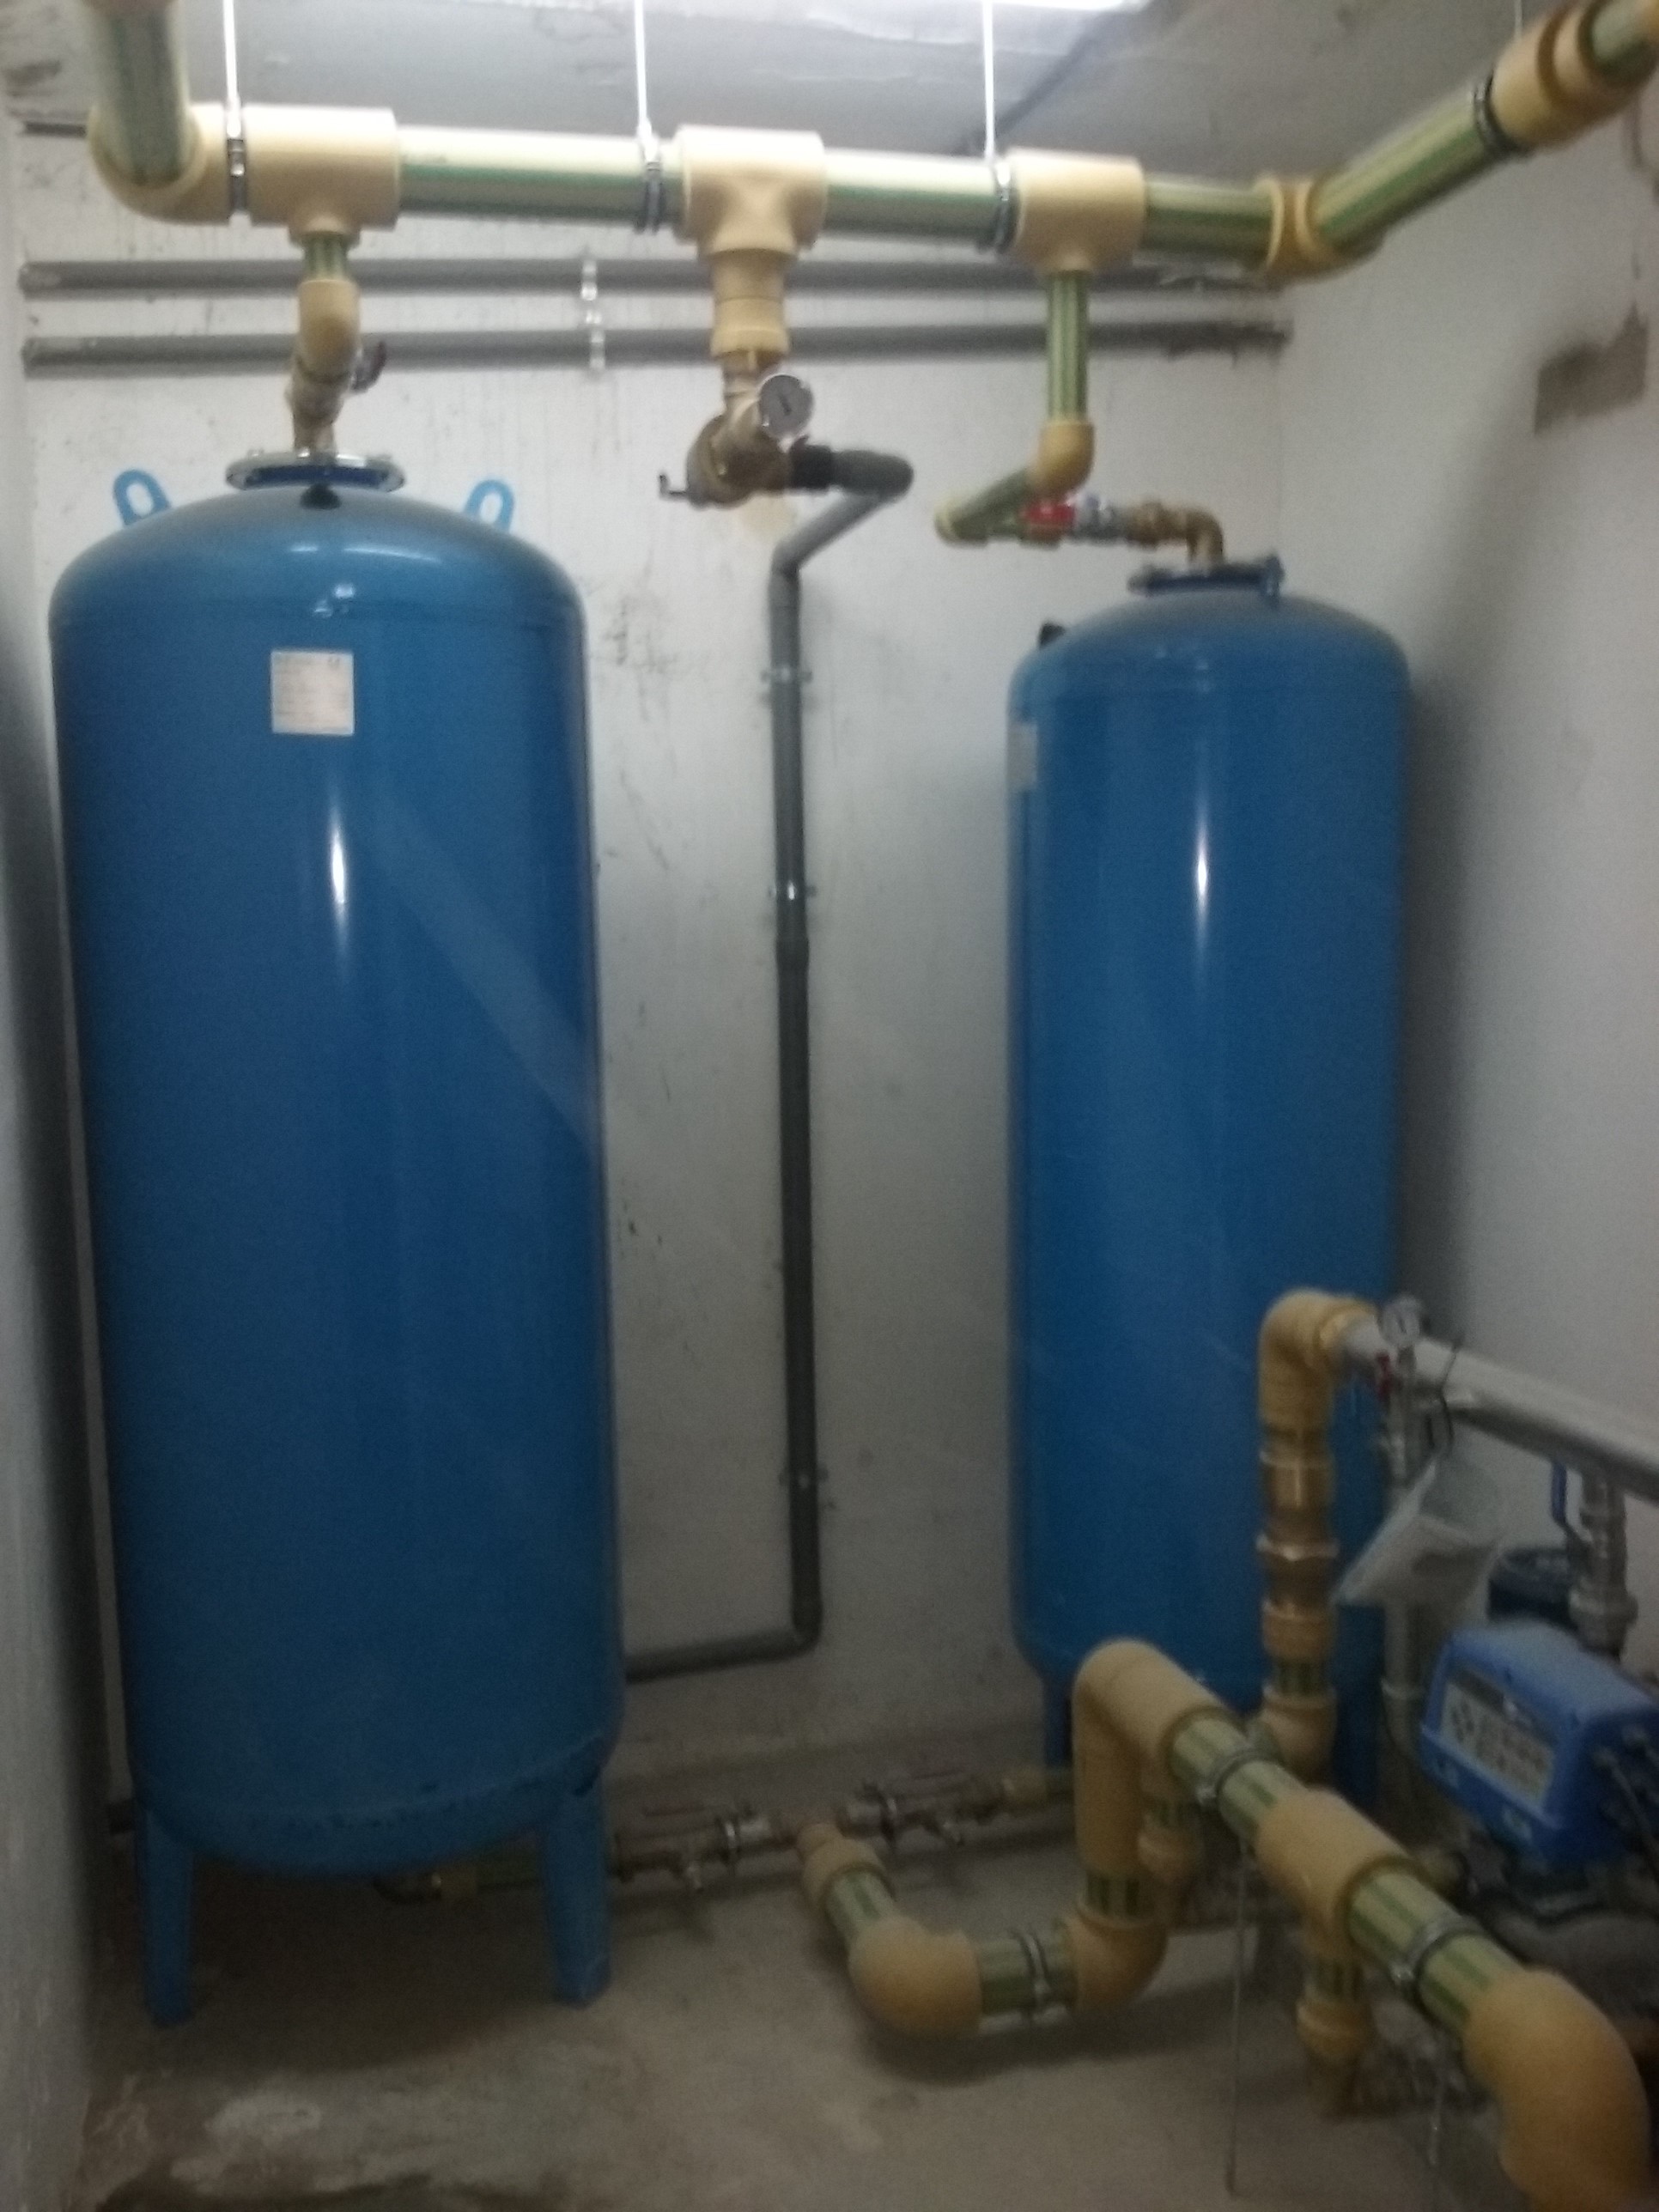 Grupos de presión de agua fría domésticos - Materiales Calefacción